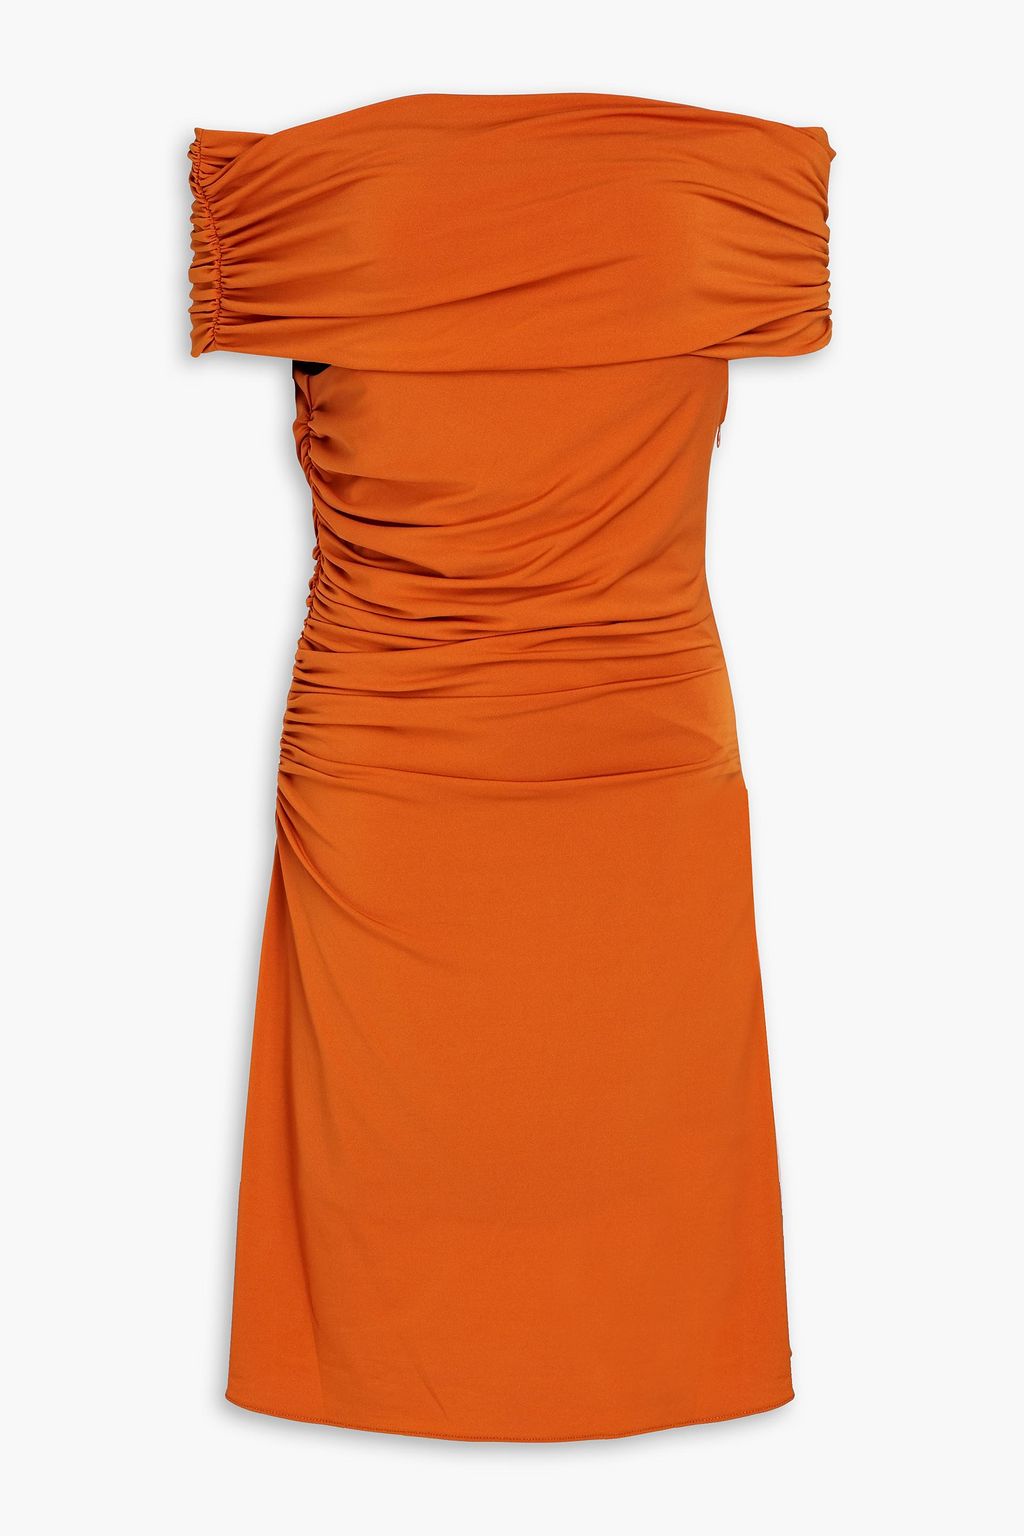 Платье мини из джерси Aliana со сборками и открытыми плечами HALSTON, оранжевый платье мини kenna из джерси с одним рукавом и сборками halston белый